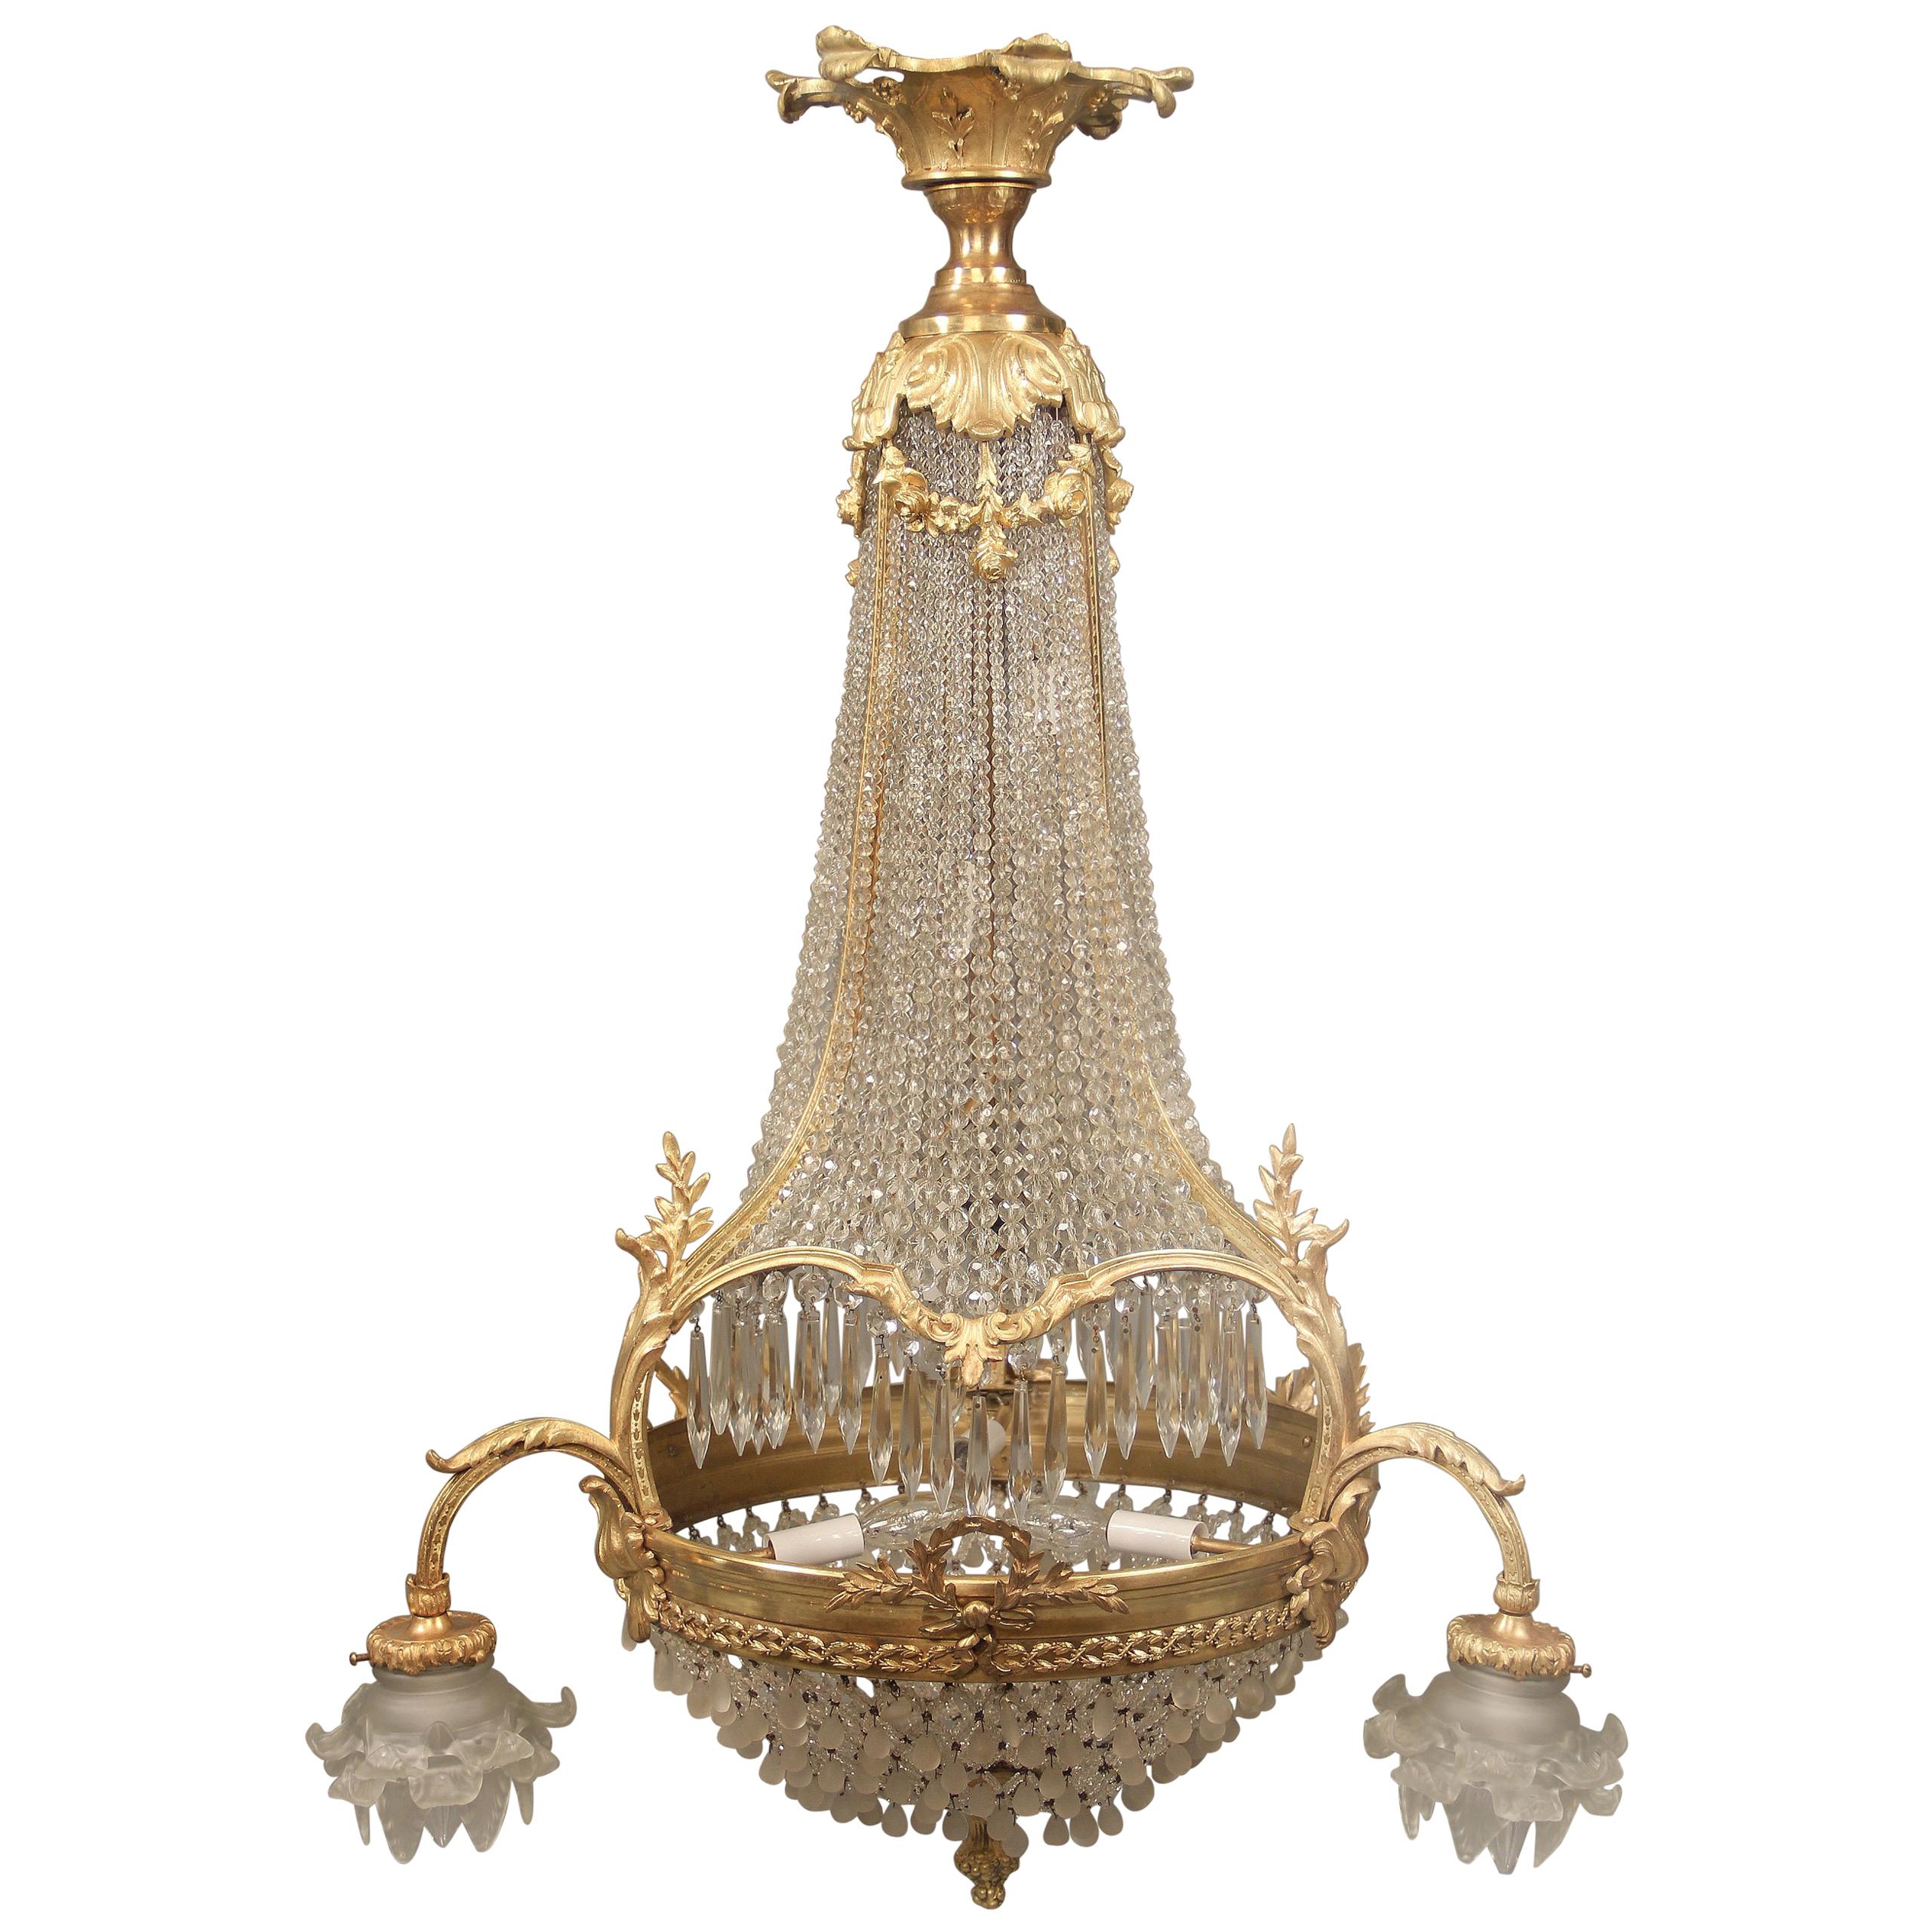 Beau lustre à neuf lumières en forme de panier avec perles en bronze doré de la fin du XIXe siècle